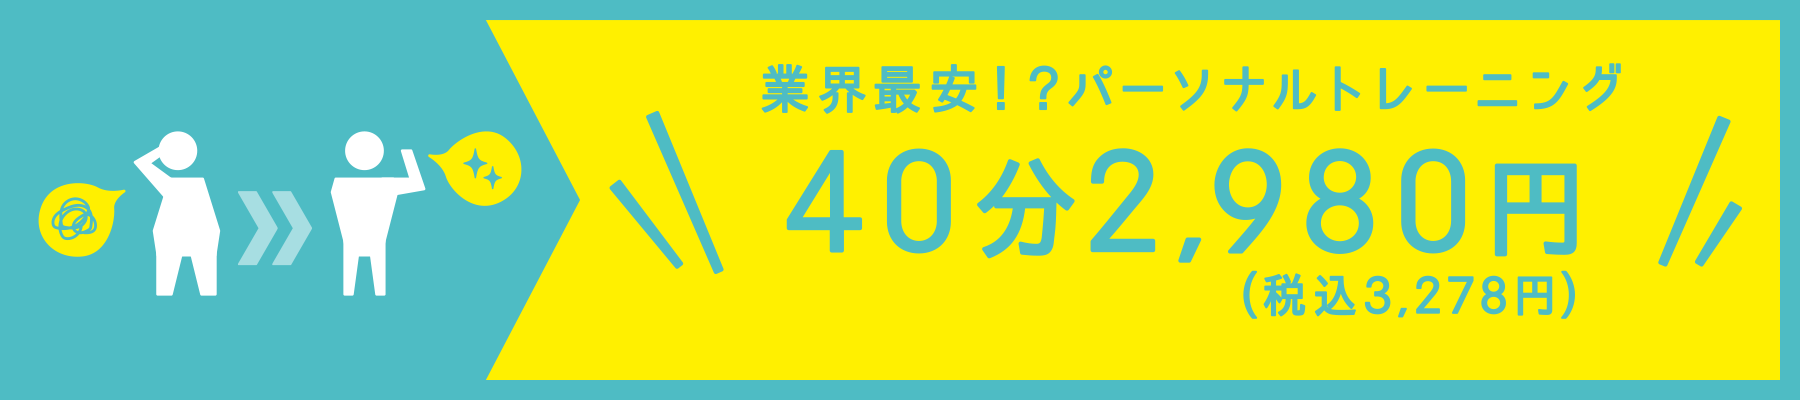 スマートフィット100 稲毛店のキャンペーン